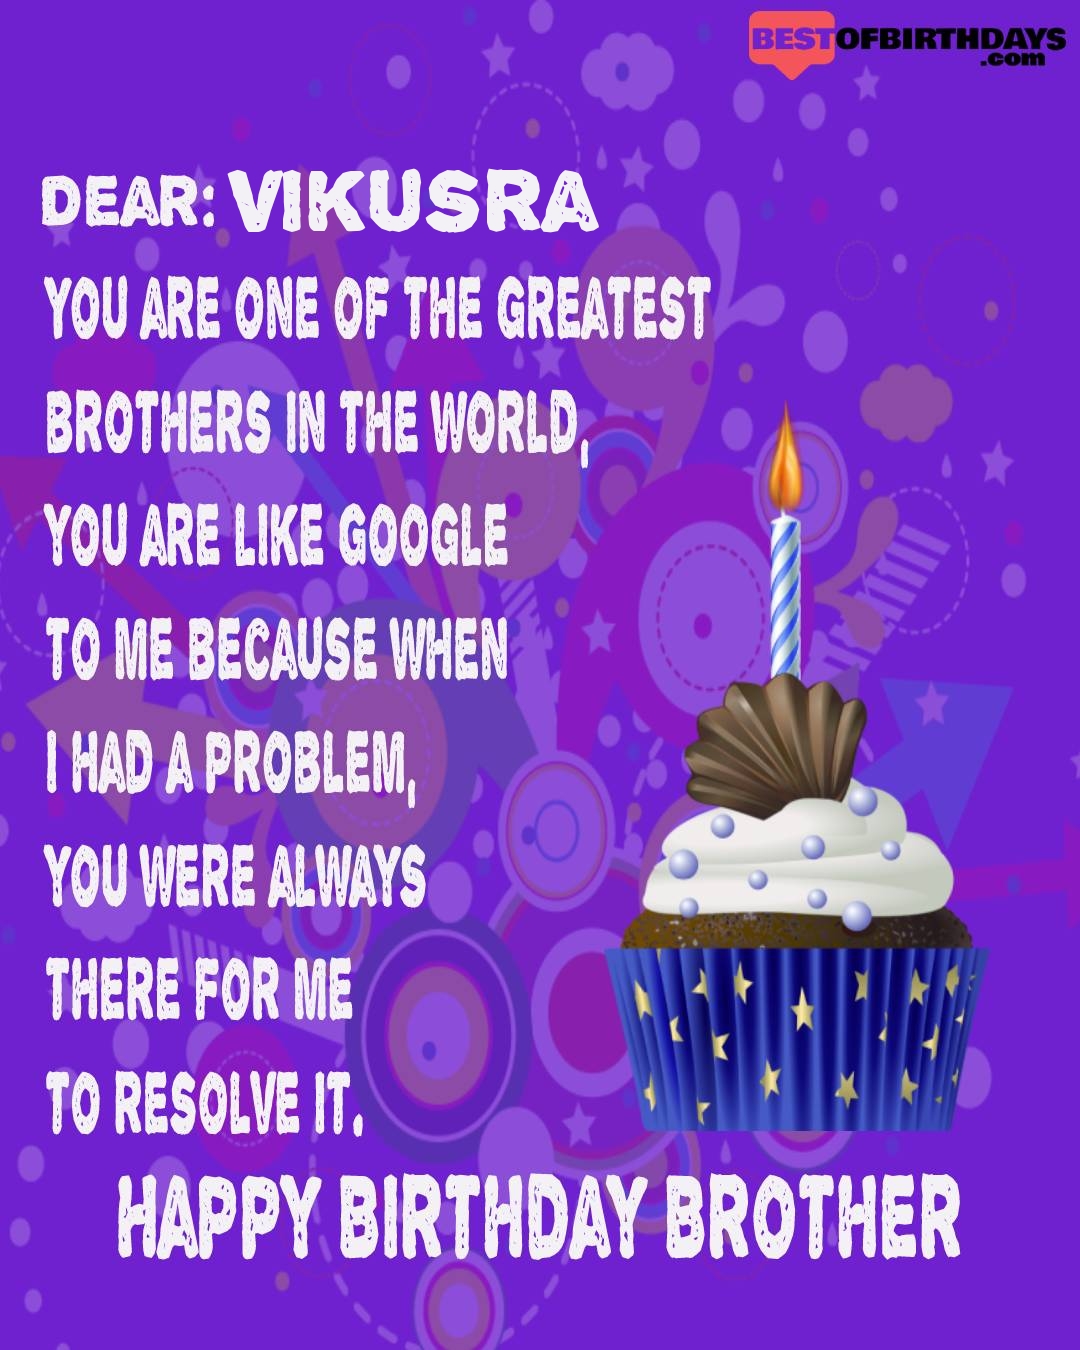 Happy birthday vikusra bhai brother bro